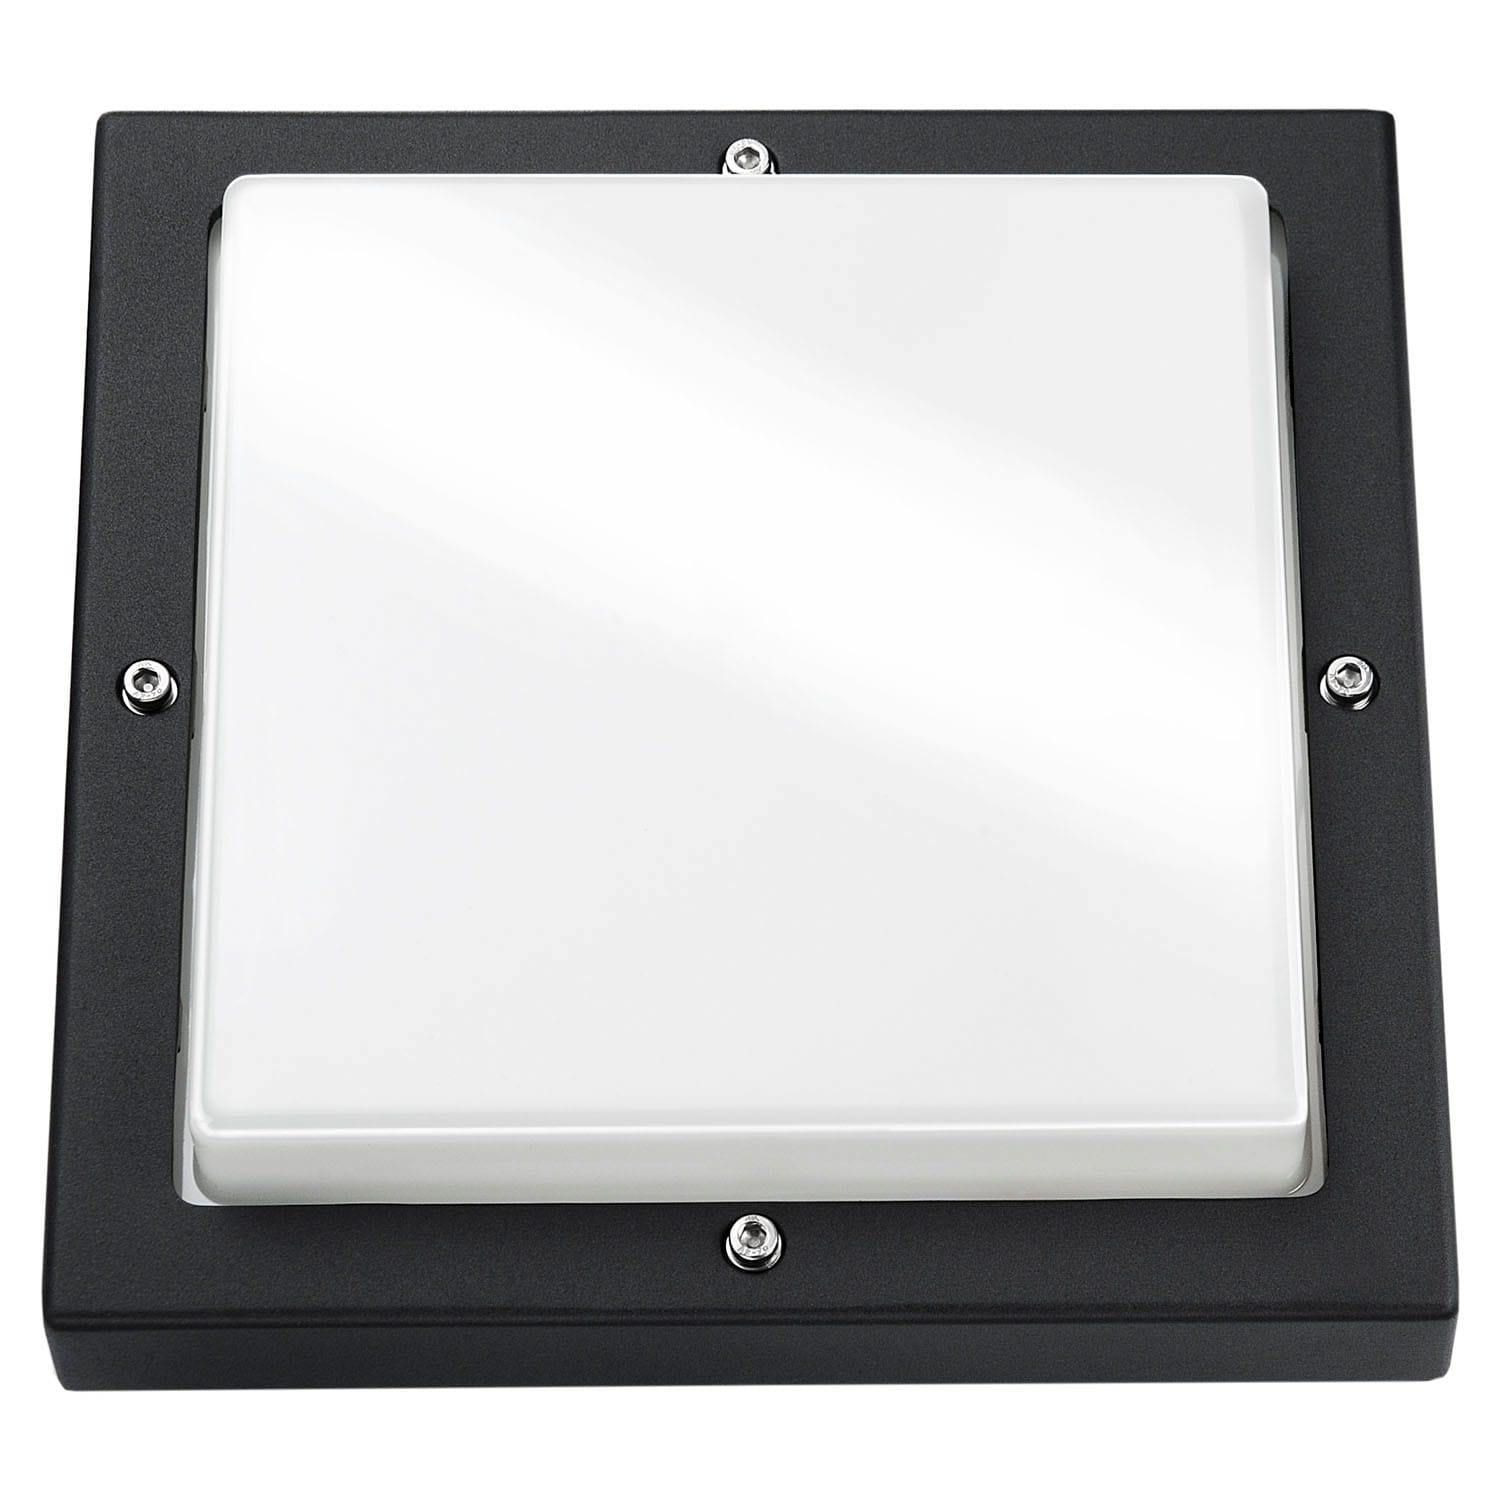 SG Lighting - Basso hublot carré noir 2xE27 avec détecteur classe I IP65 IK10 850°